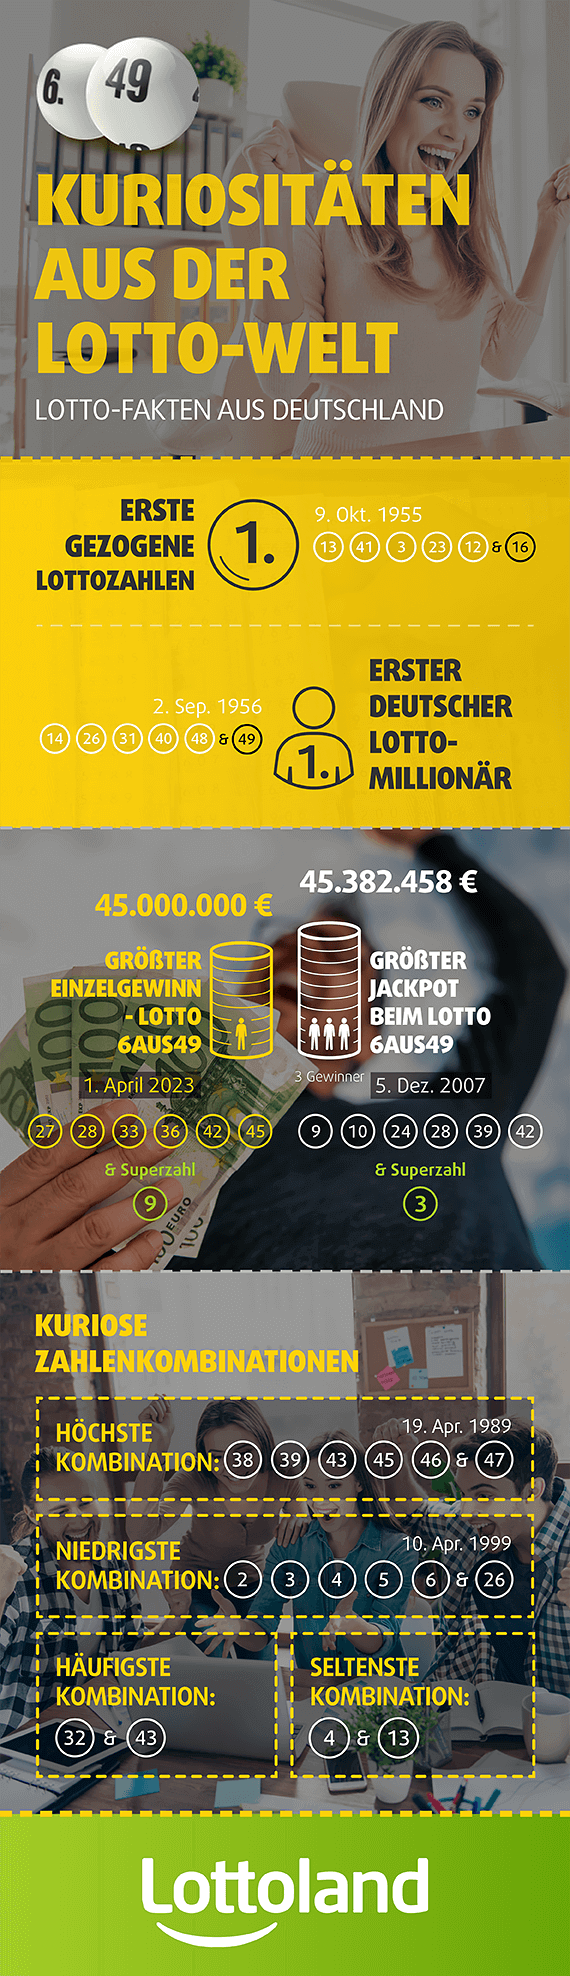 Kuriositäten aus der Lotto-Welt